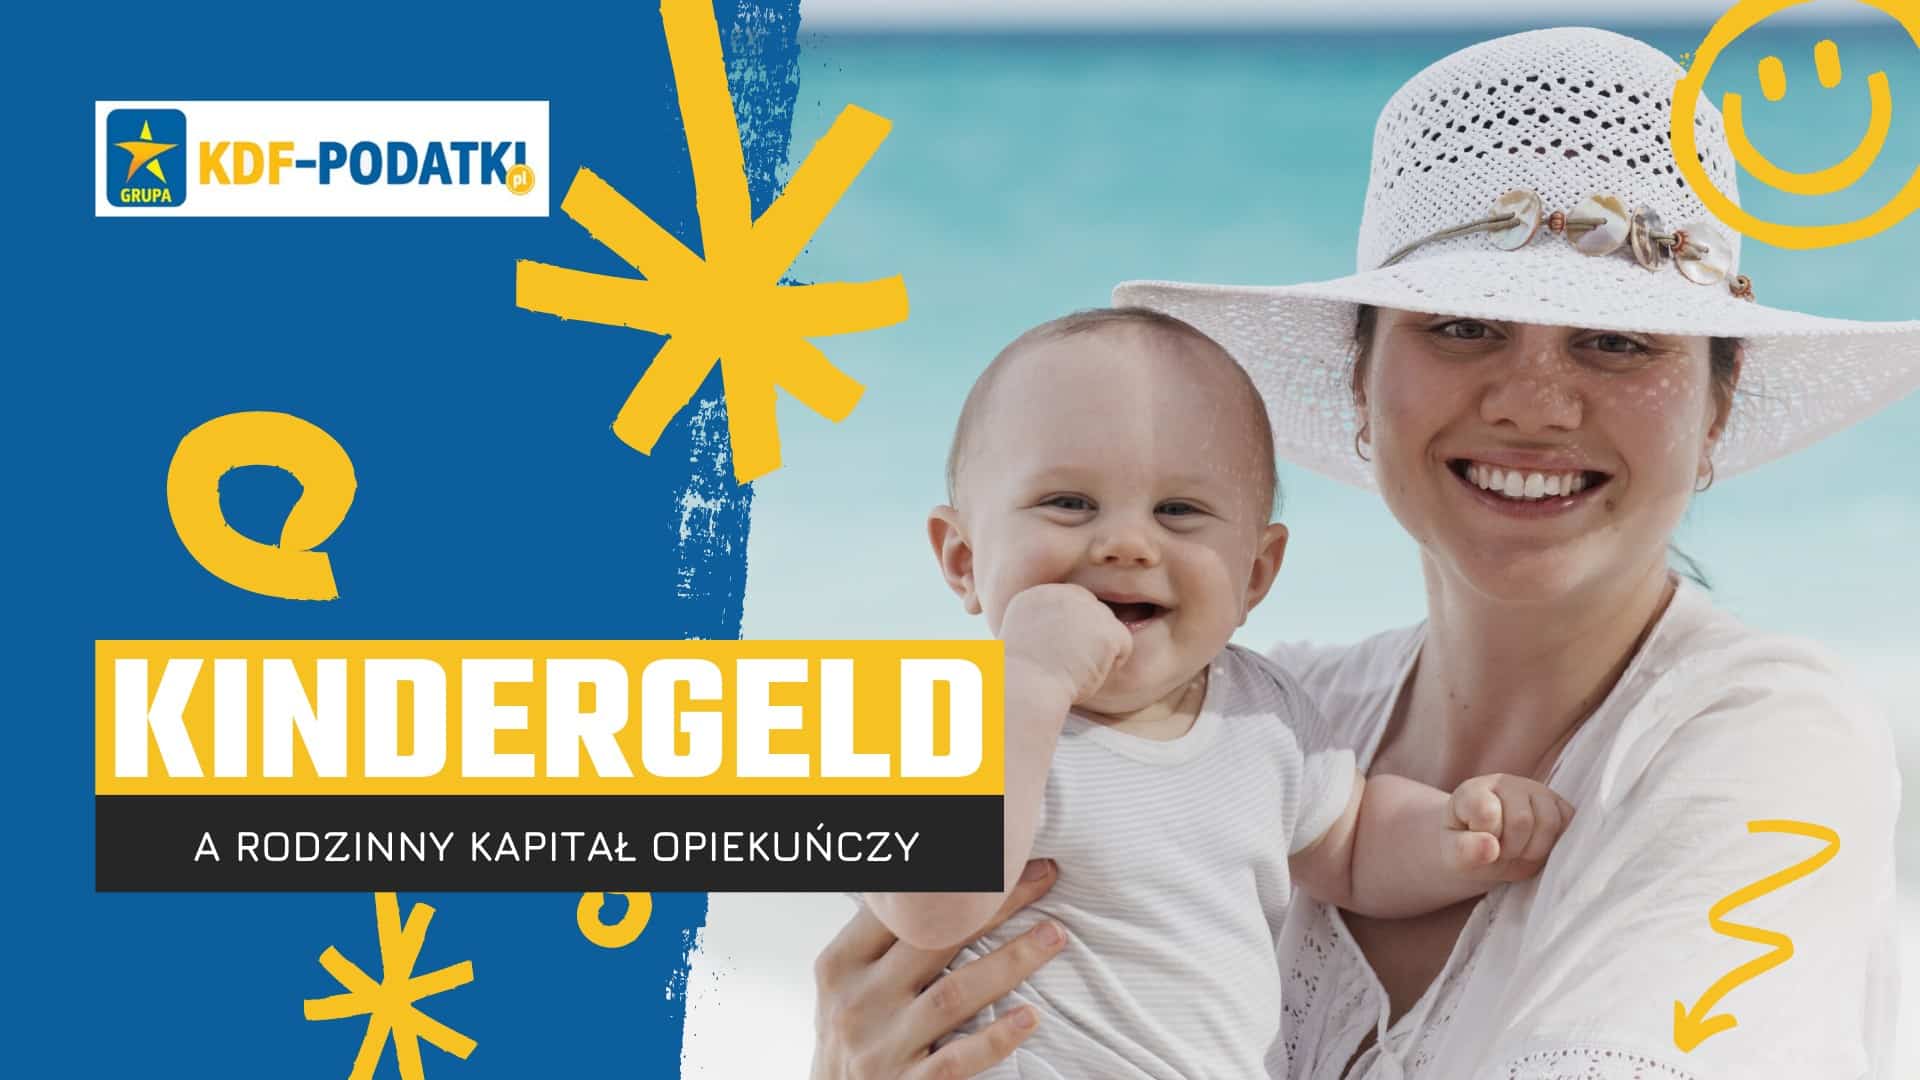 kindergeld a rodzinny kapitał opiekuńczy rko kdf podatki